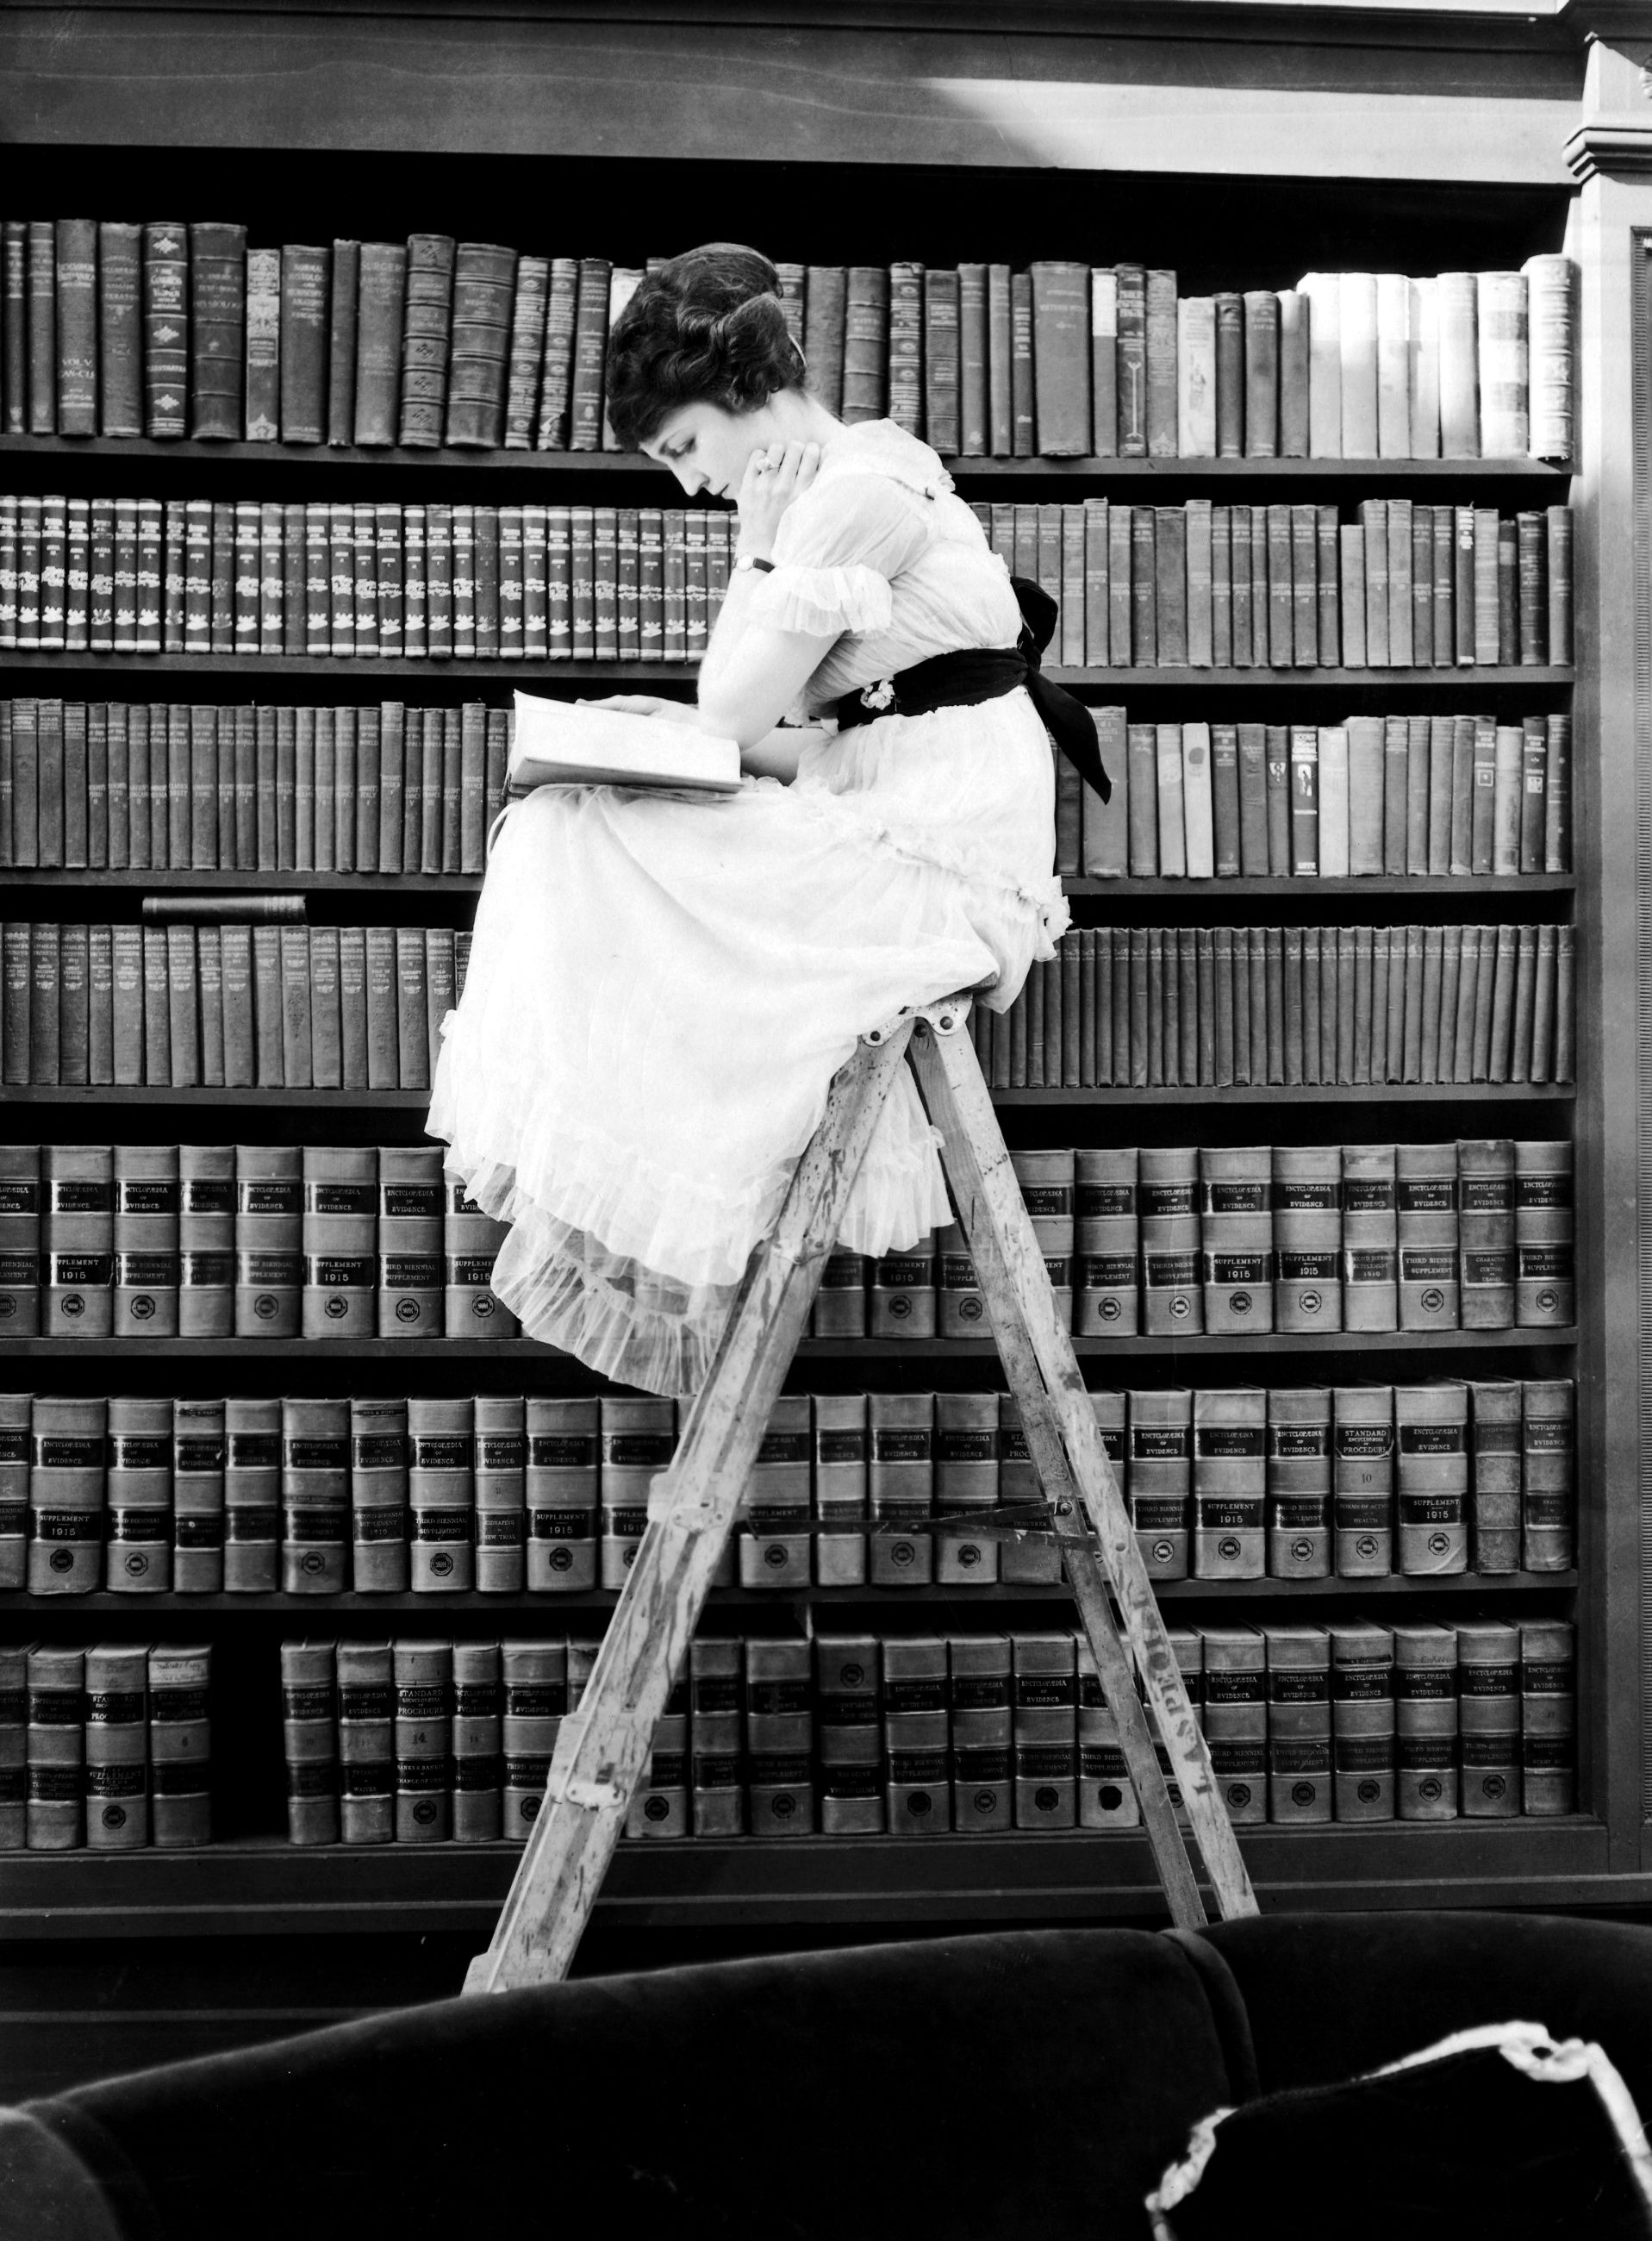 Читать книги 20 века. Книга человек. Девушка с книгой. Девушка в библиотеке. Фотосессия в библиотеке.